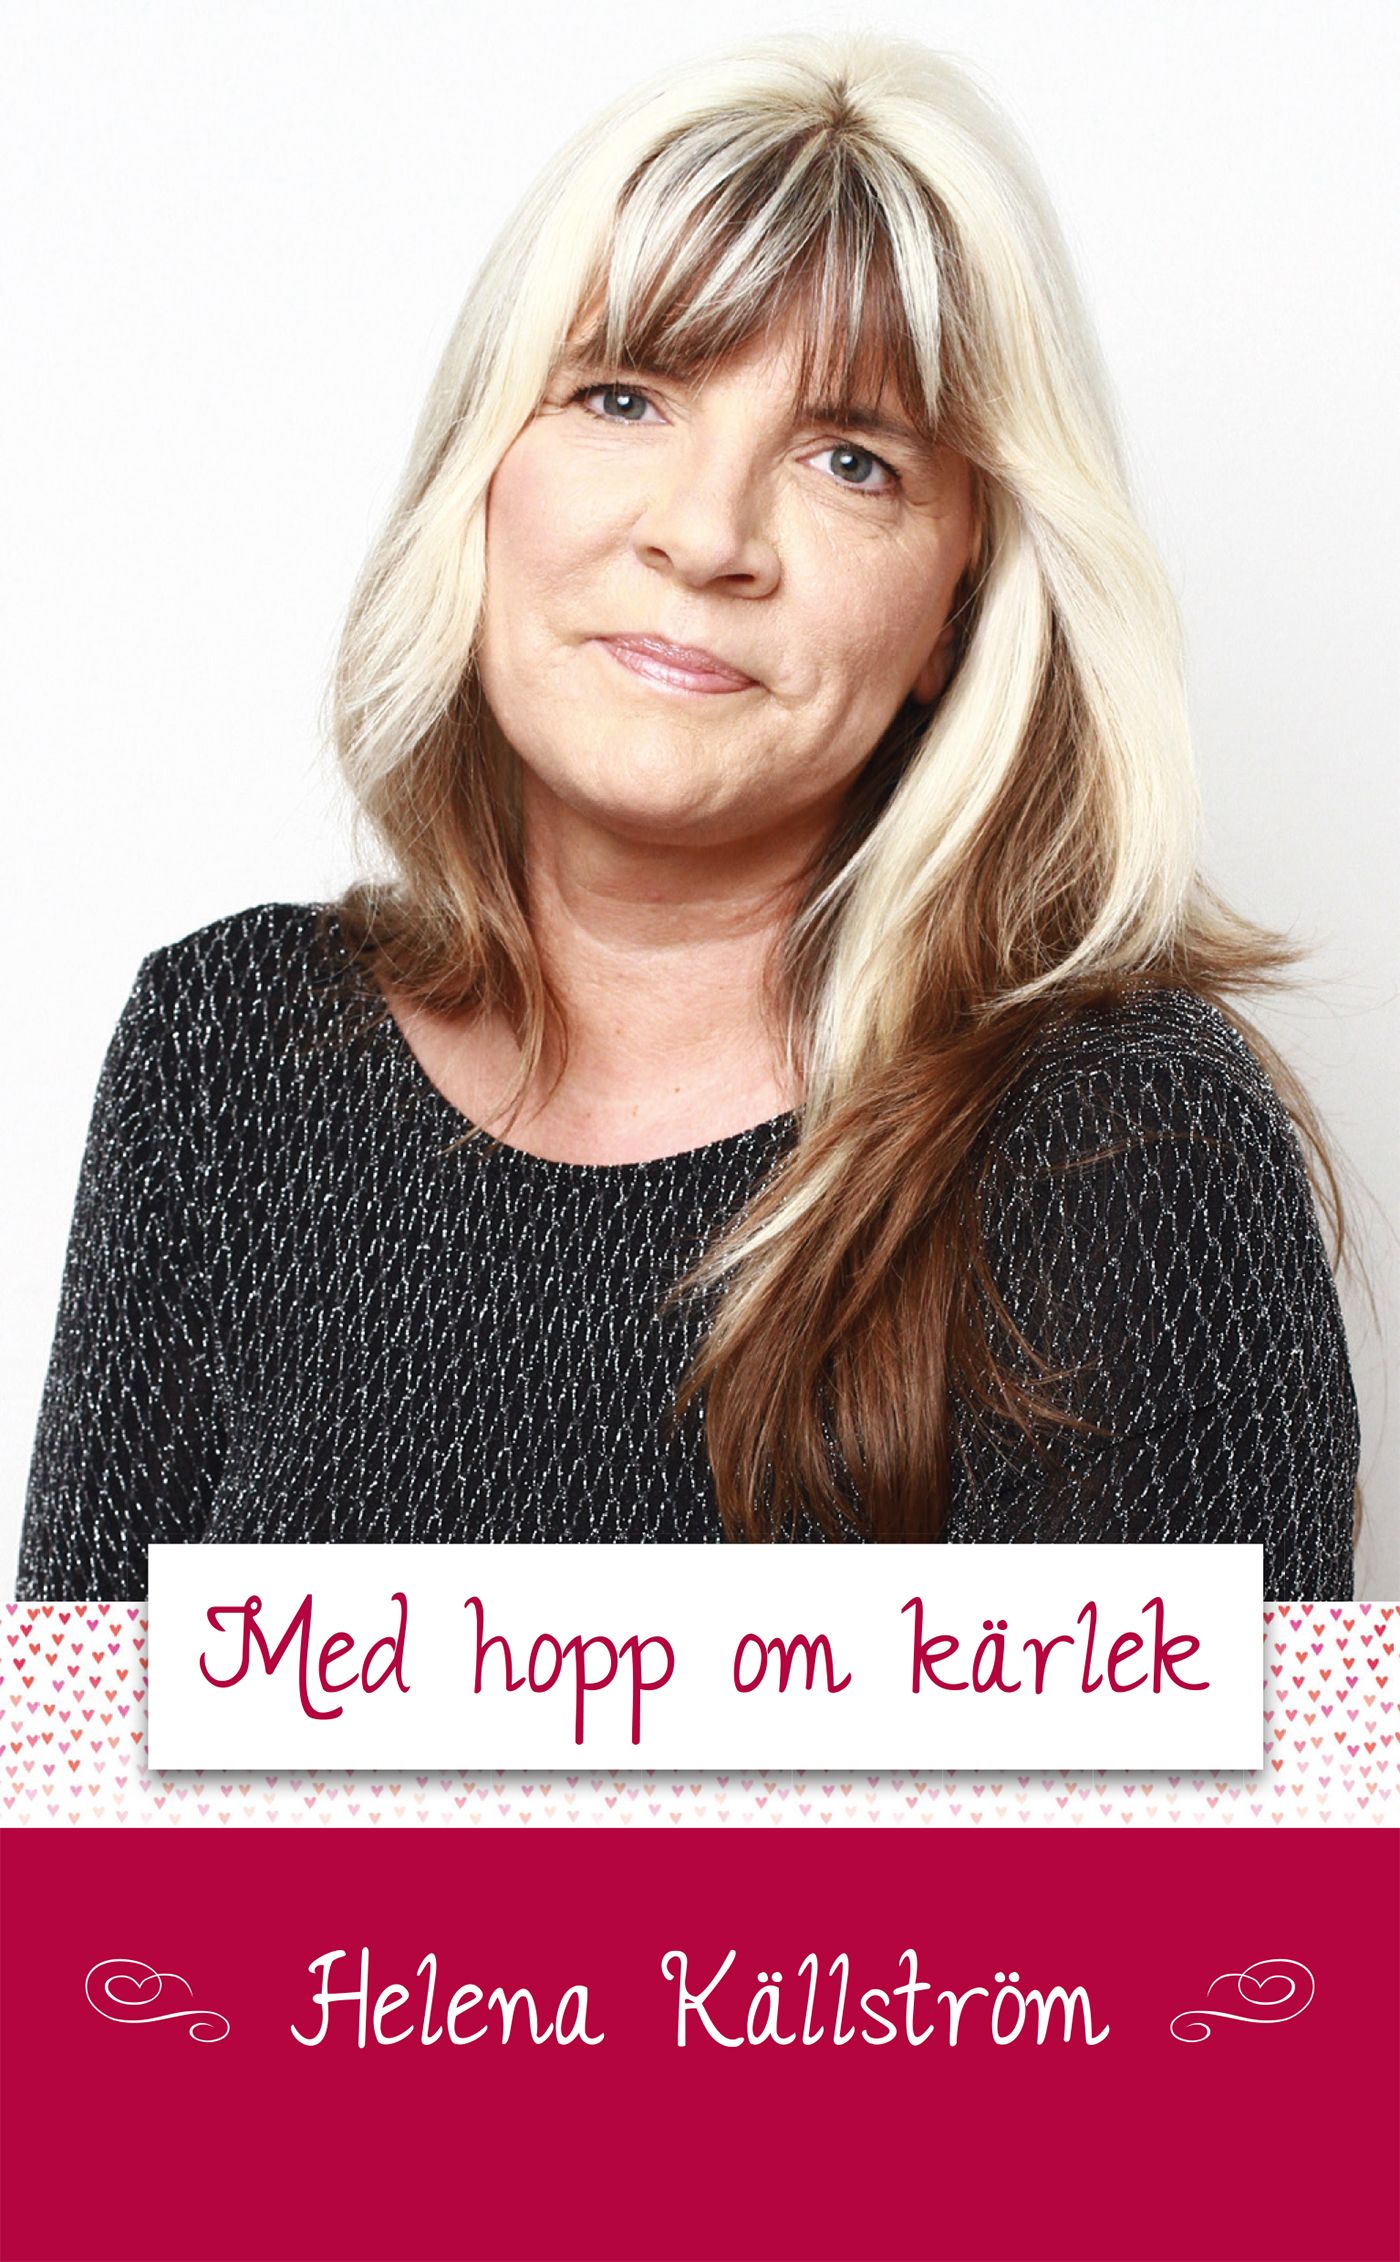 Med hopp om kärlek, e-bog af Helena Källström